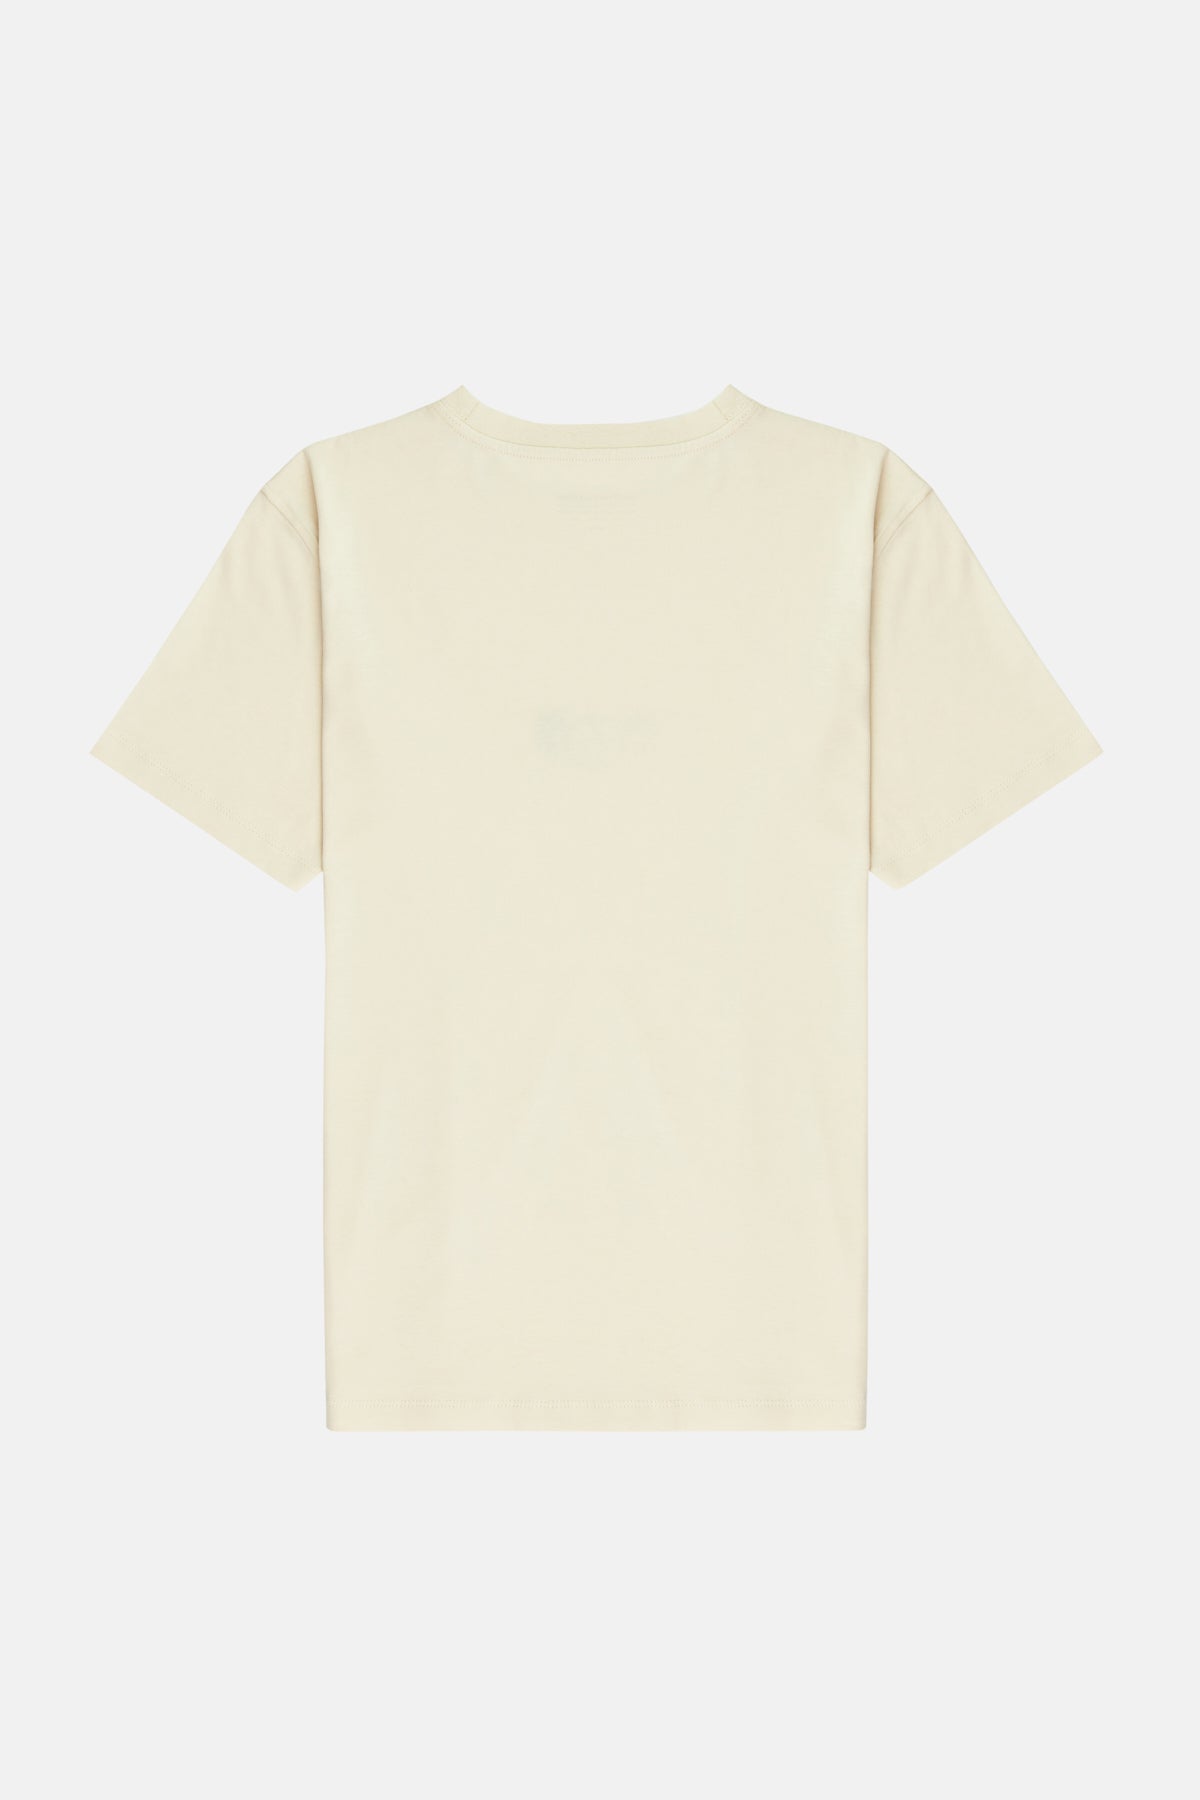 Sincap Light-Weight T-Shirt - Parşömen Bej